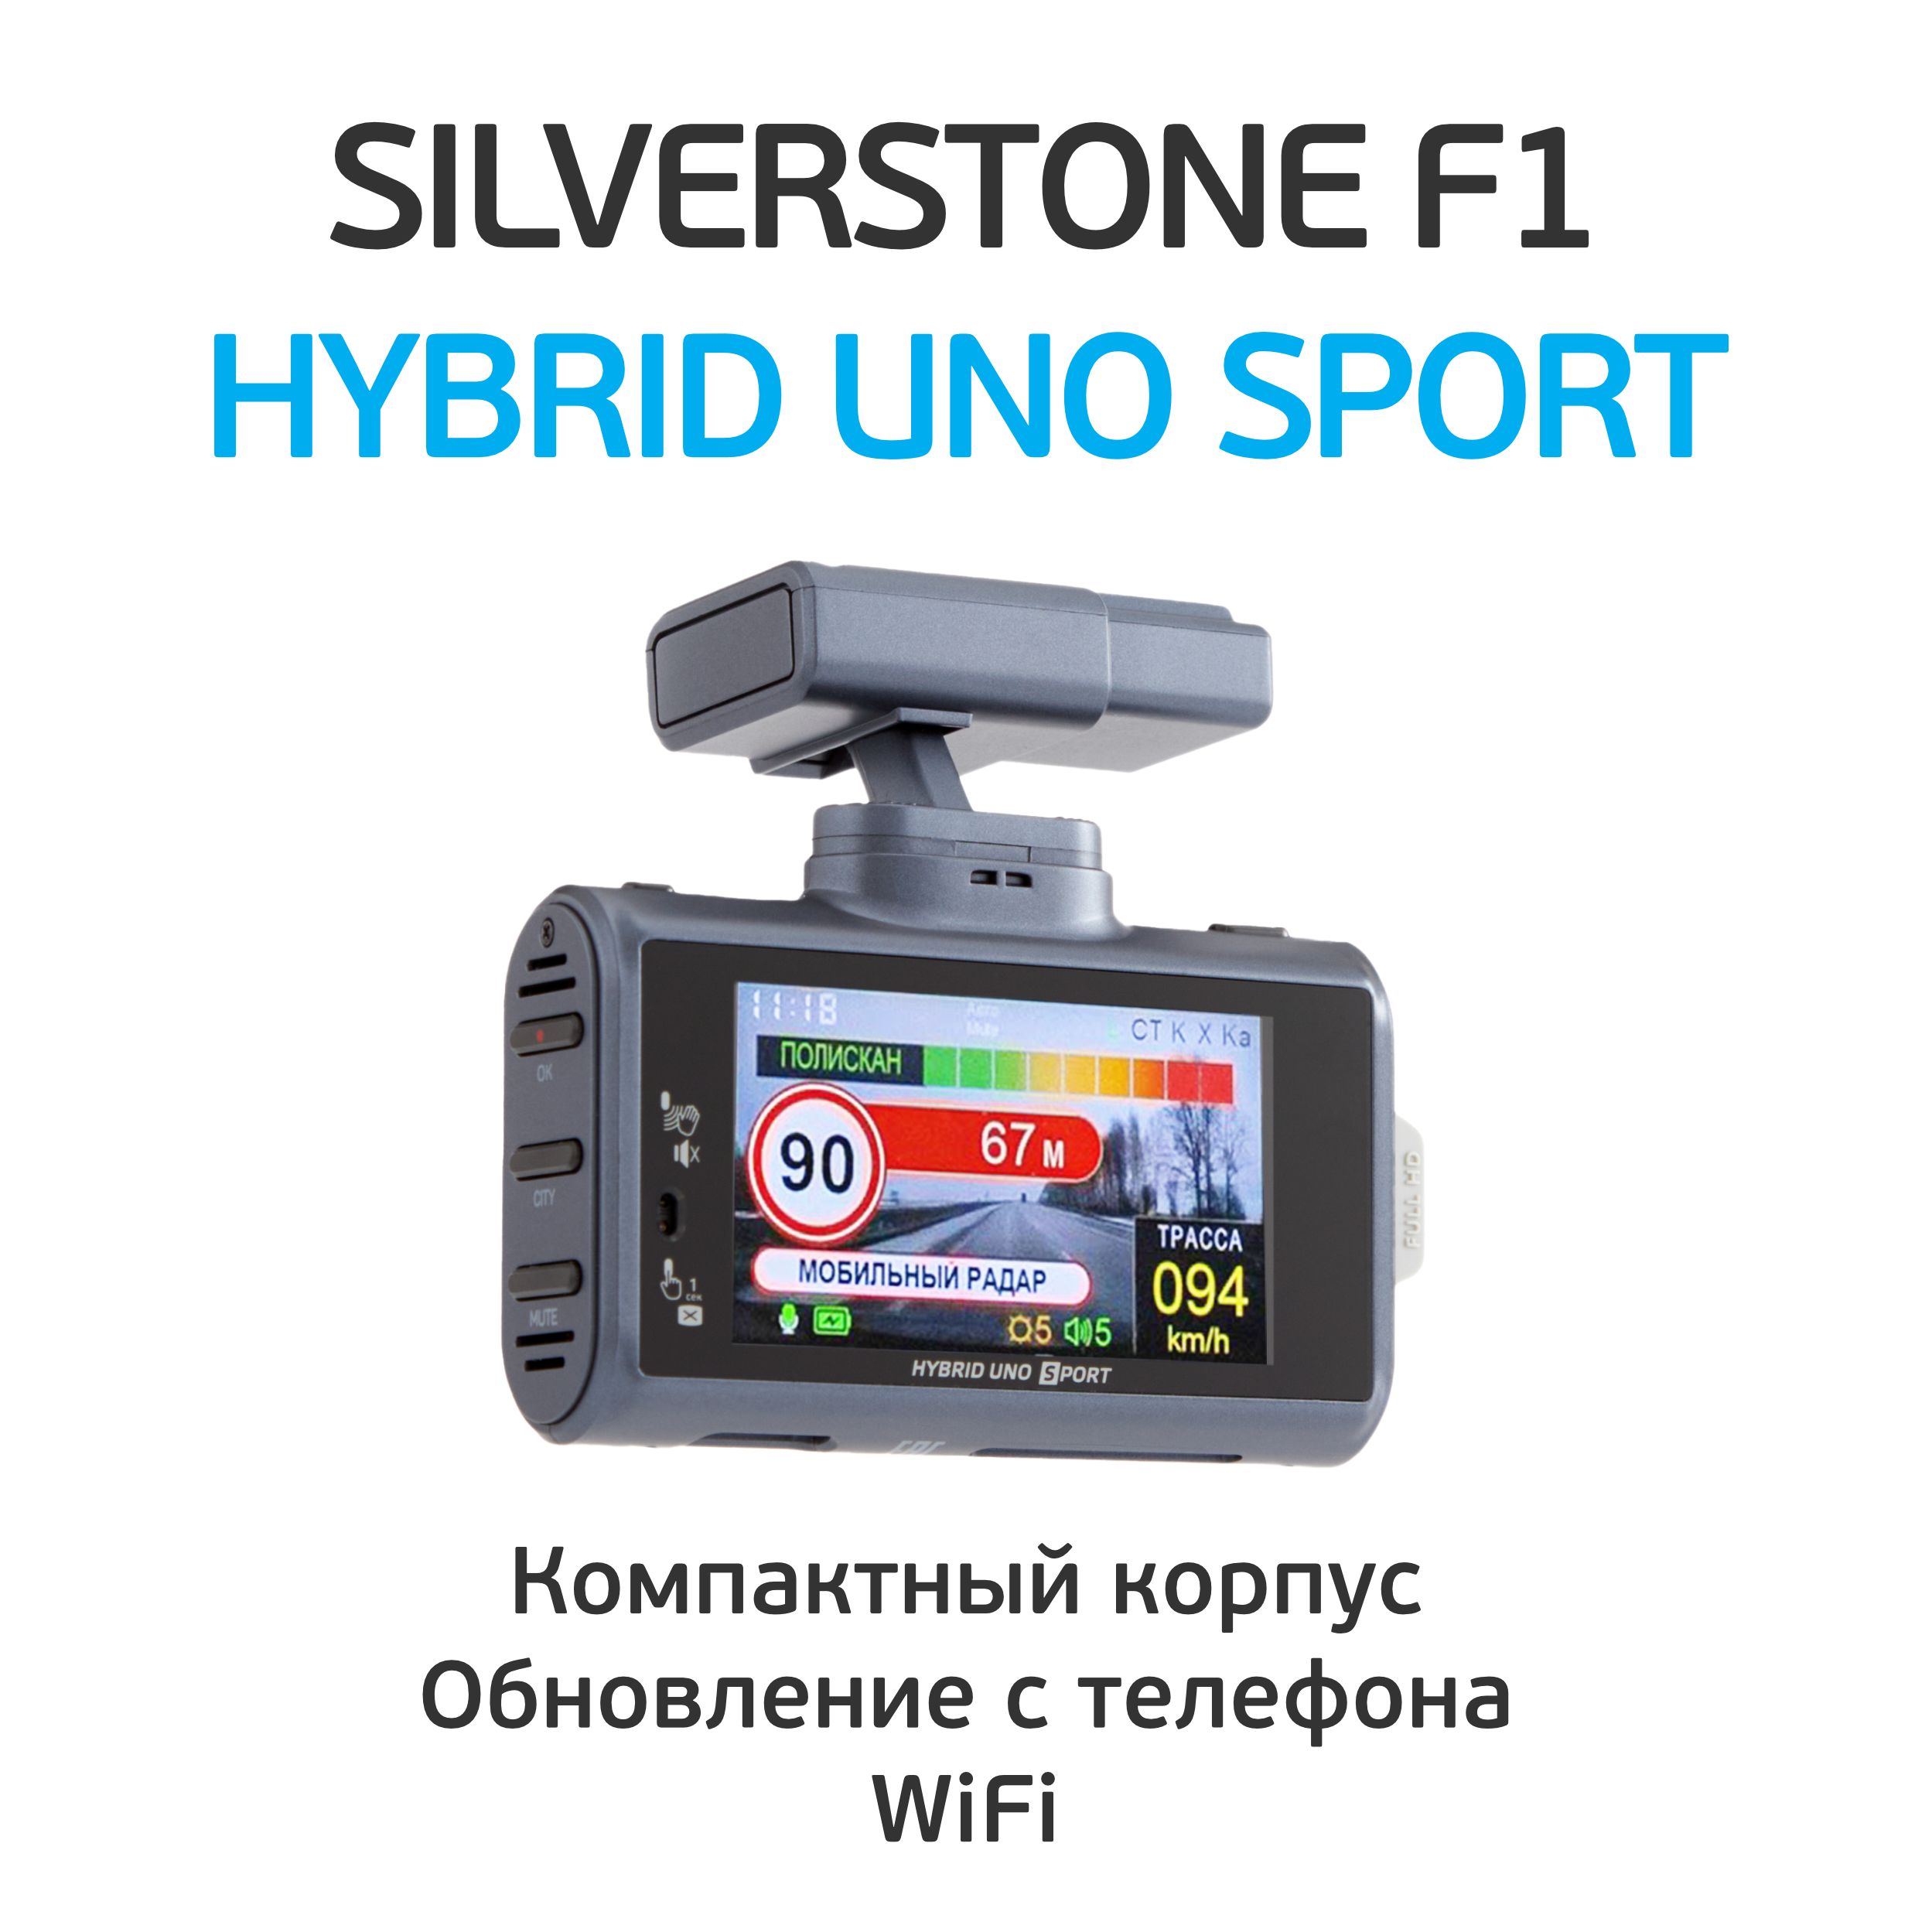 Uno sport wifi. Silverstone f1 Hybrid uno Sport обновление прошивки. Silverstone f1 Hybrid uno Sport Wi-Fi отзывы.